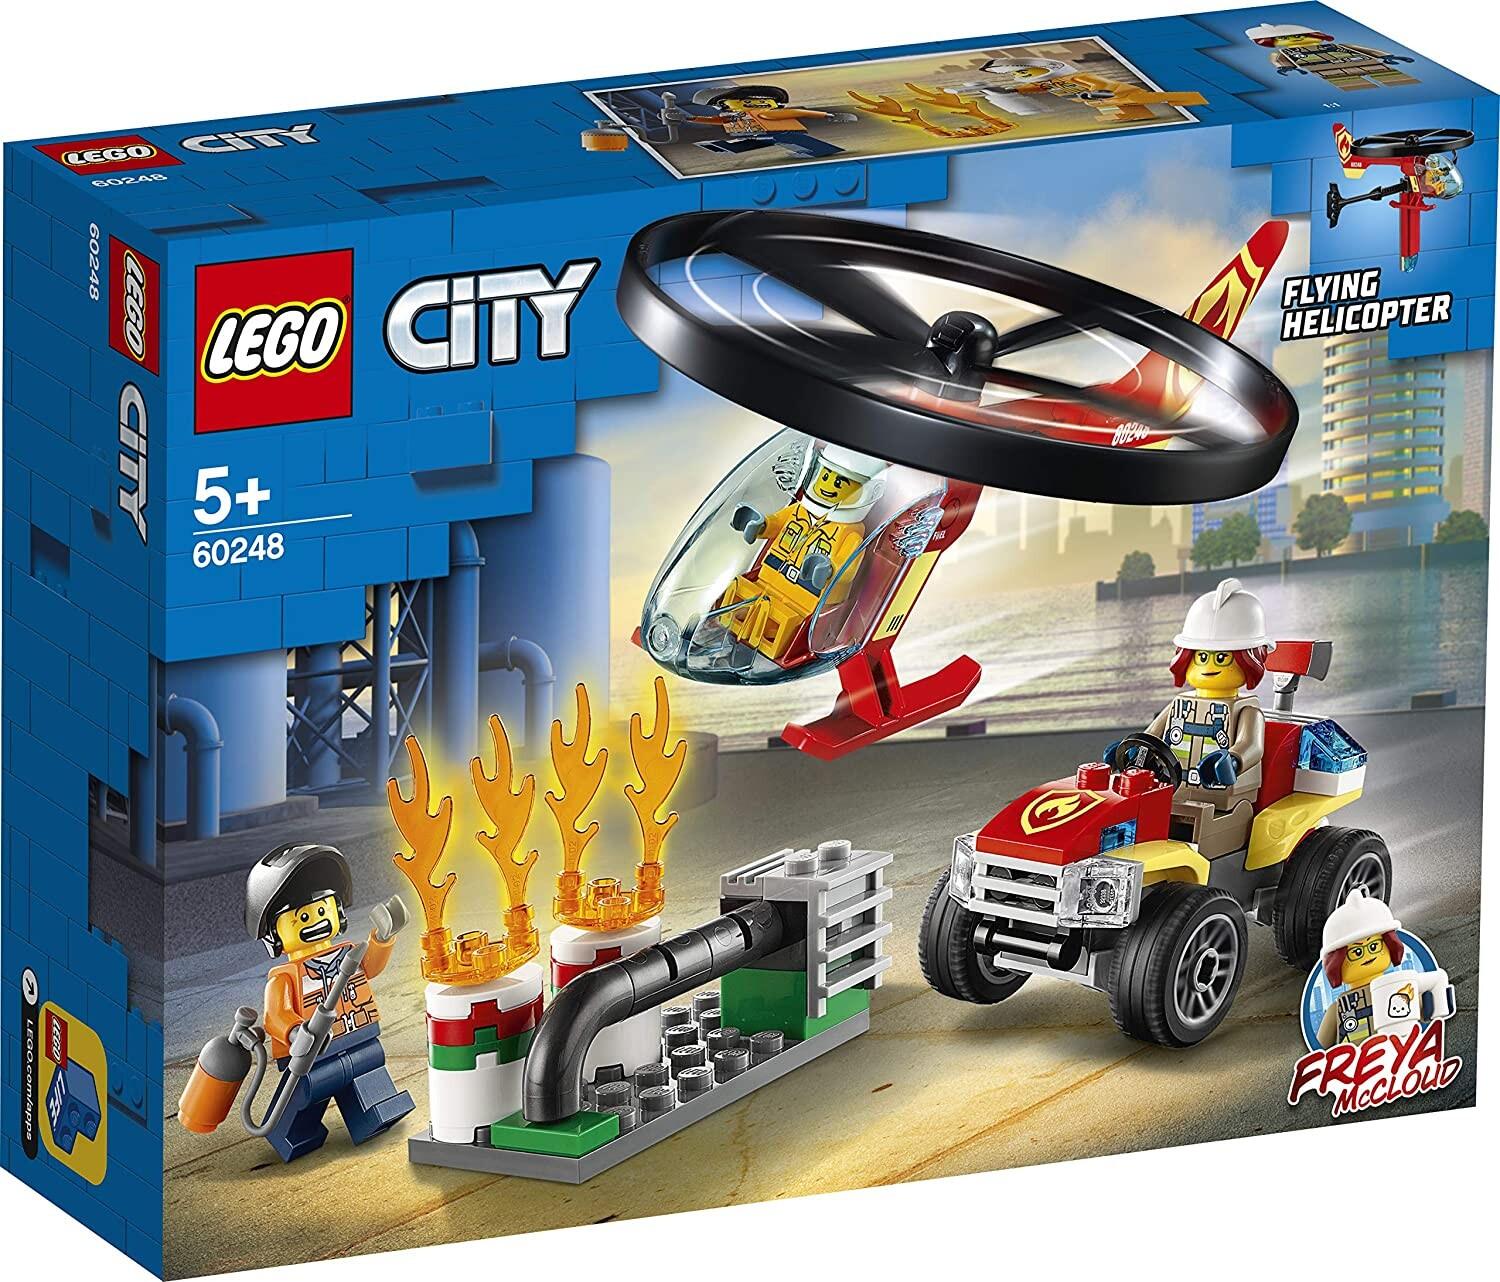 LEGO City La caserne de pompiers 60320 Ensemble de construction